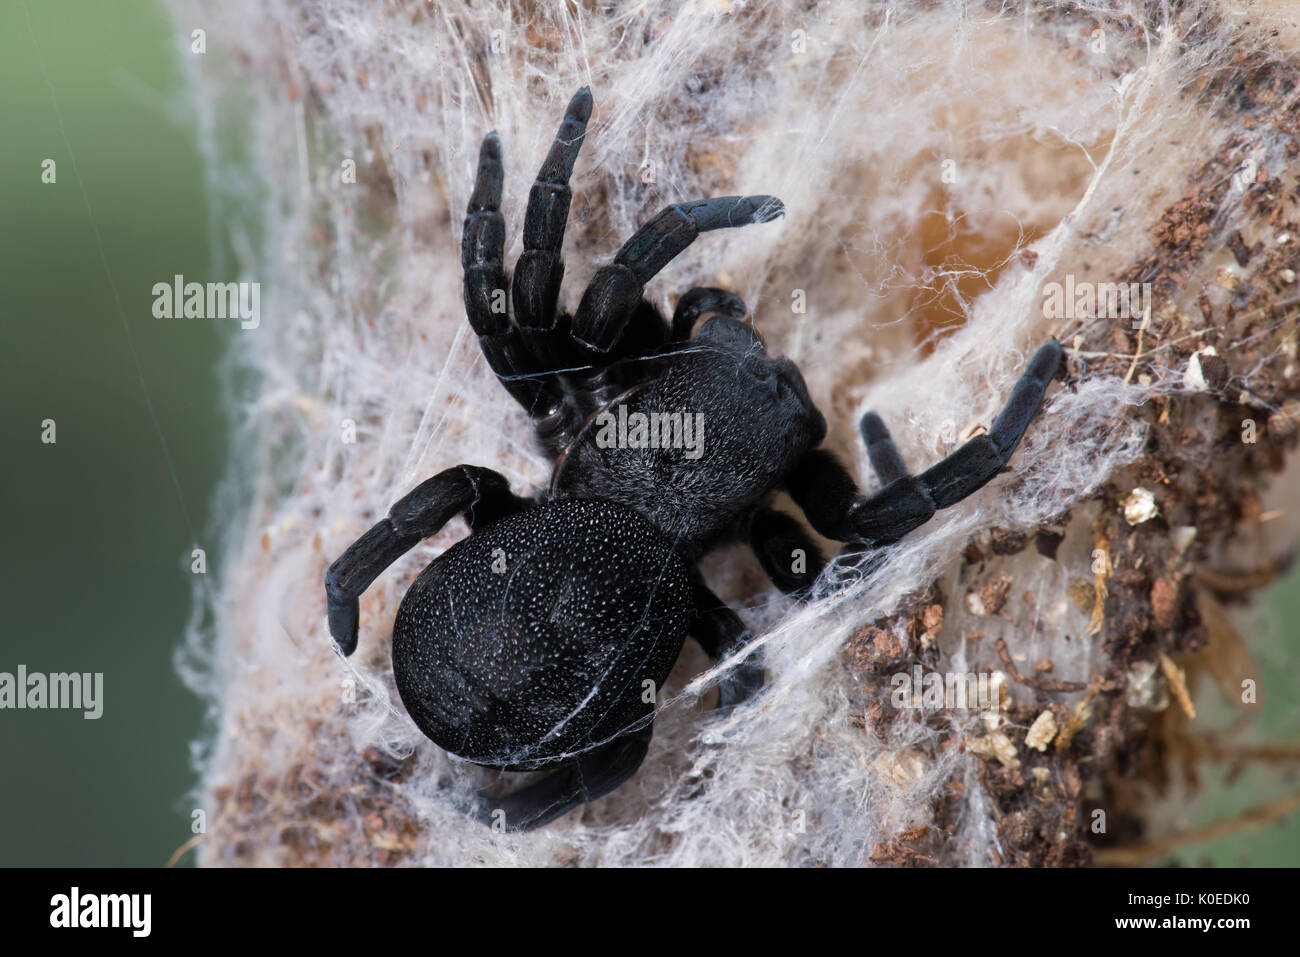 Ladybird Spider, Female, Eresus walckenaeri, on web, Eastern Mediterranean Stock Photo